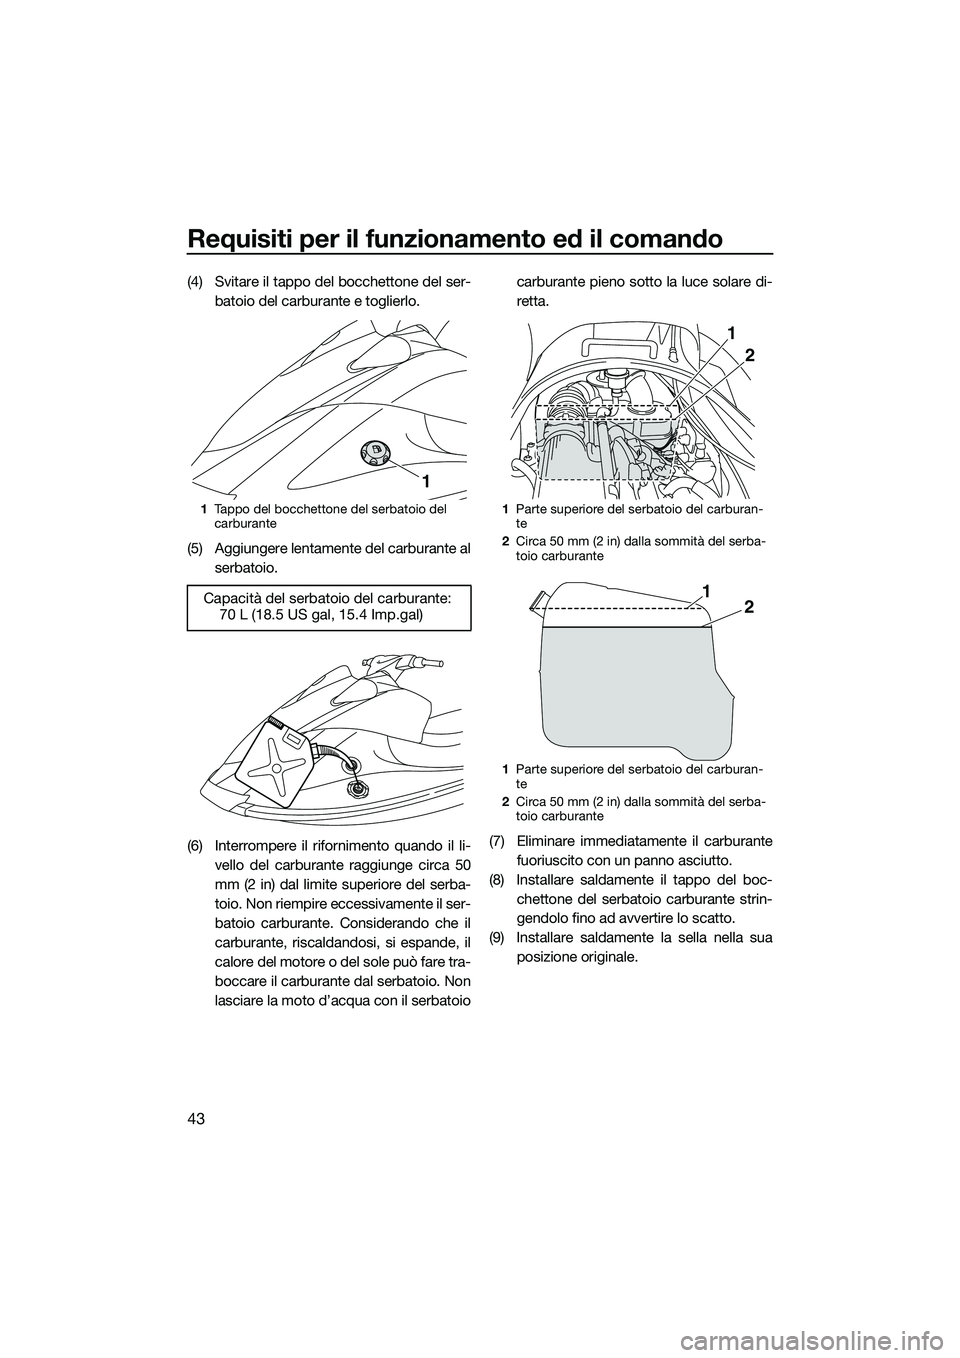 YAMAHA V1 2015  Manuale duso (in Italian) Requisiti per il funzionamento ed il comando
43
(4) Svitare il tappo del bocchettone del ser-batoio del carburante e toglierlo.
(5) Aggiungere lentamente del carburante al serbatoio.
(6) Interrompere 